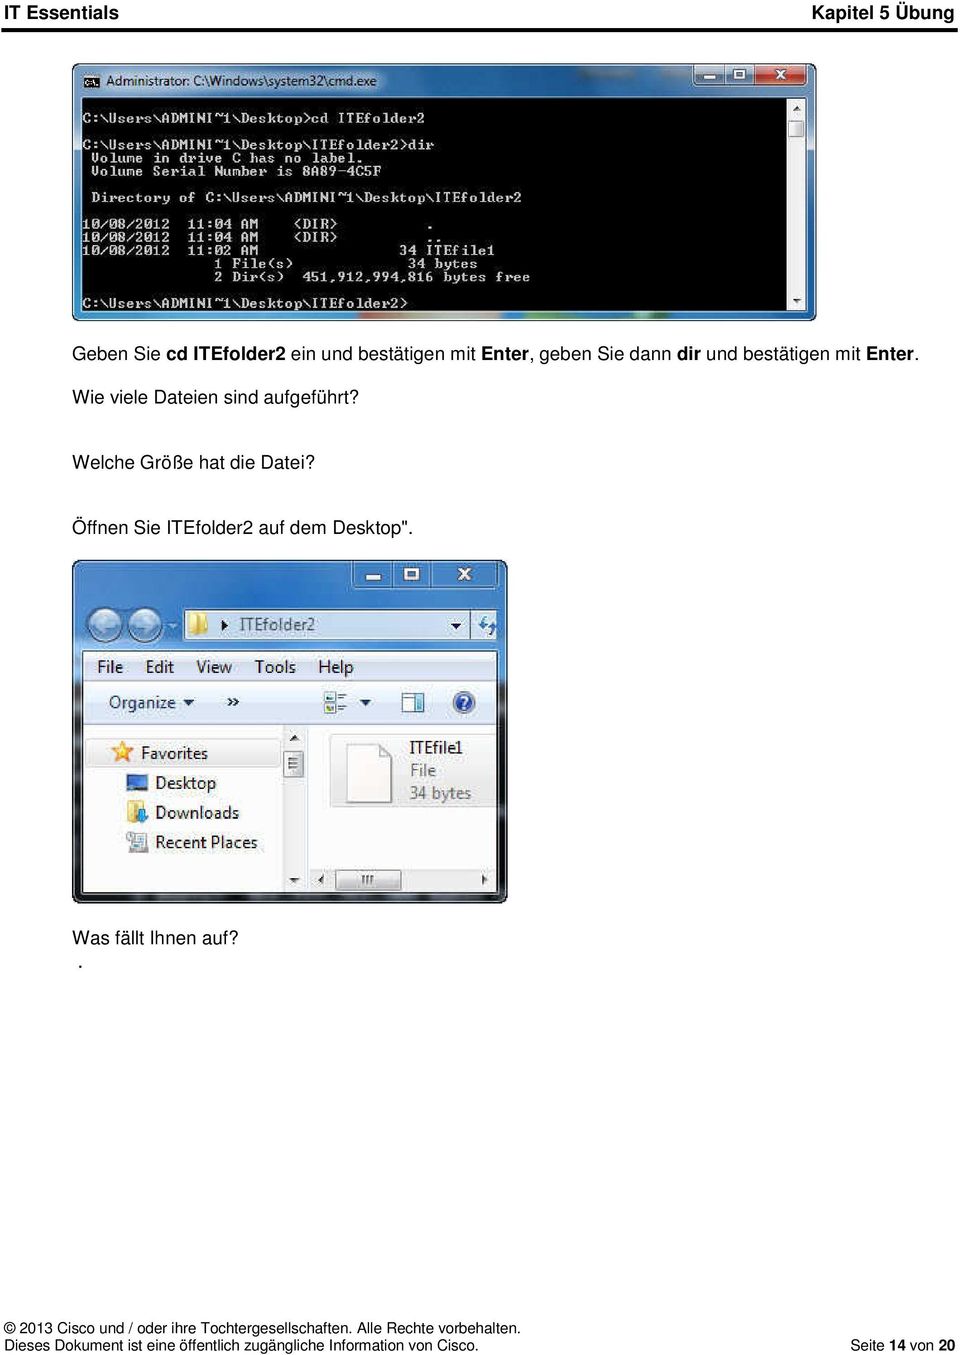 Welche Größe hat die Datei? Öffnen Sie ITEfolder2 auf dem Desktop".